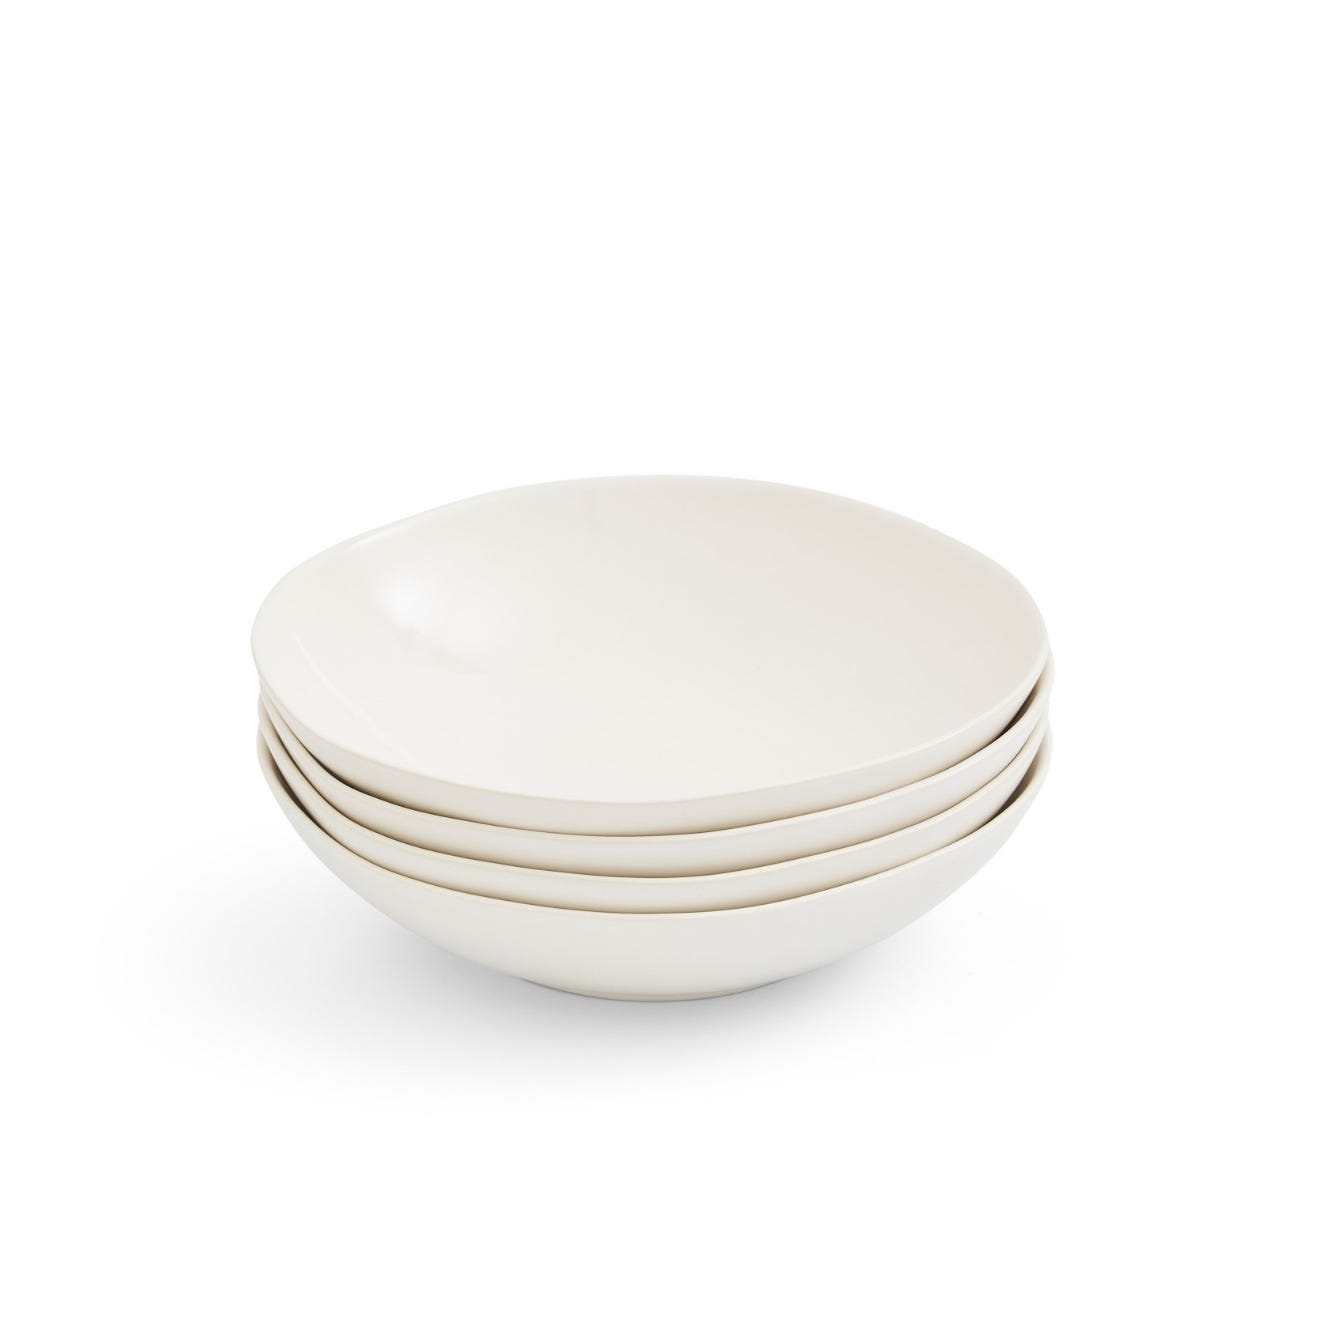 Sophie Conran Arbor Set of 4 Pasta Bowls, Cream